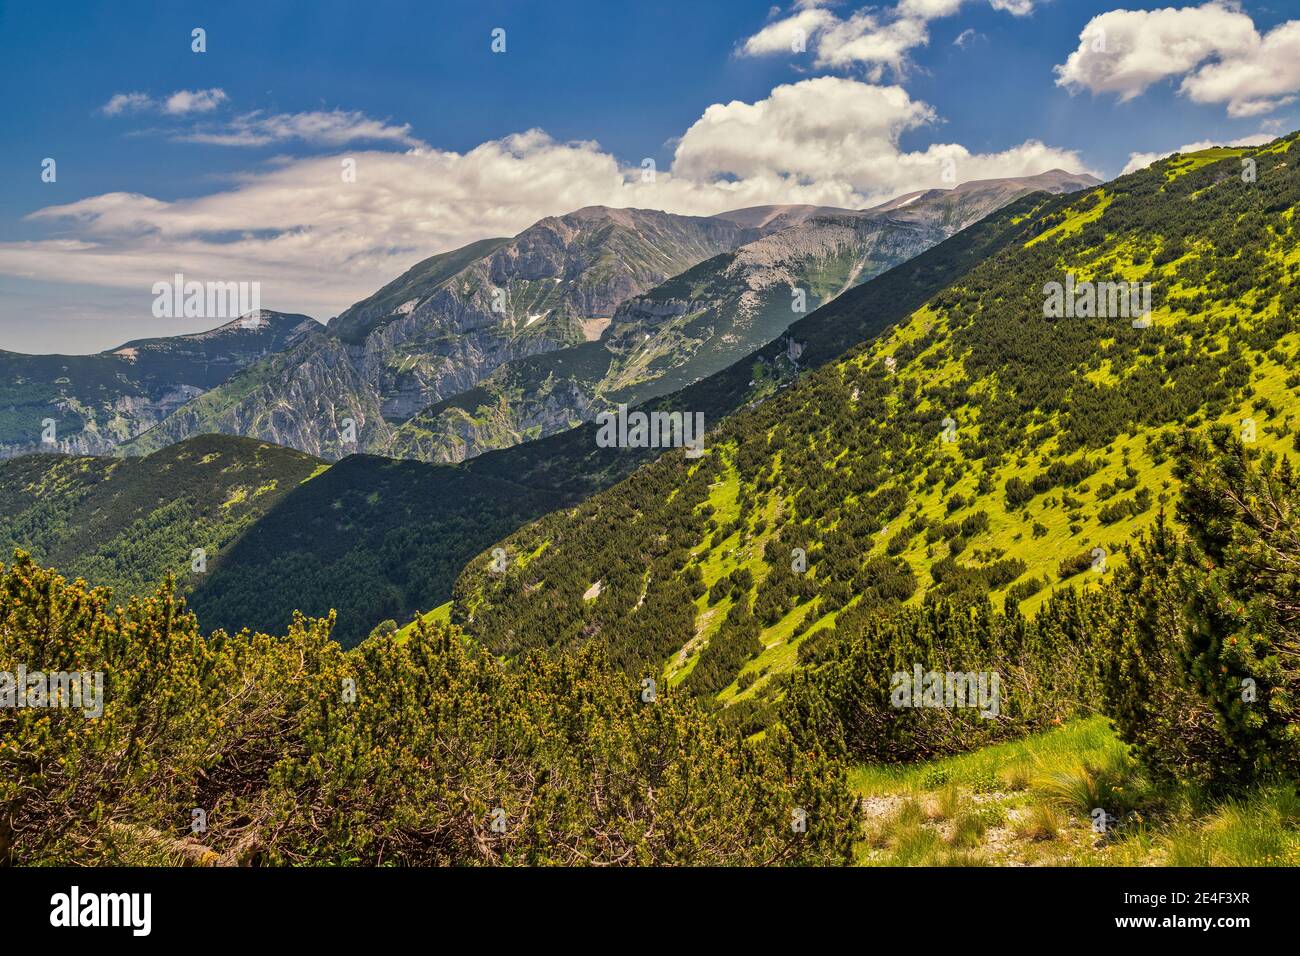 Le long du chemin menant au sommet de la Murelle dans le parc national de Maiella. Abruzzes, Italie, Europe Banque D'Images